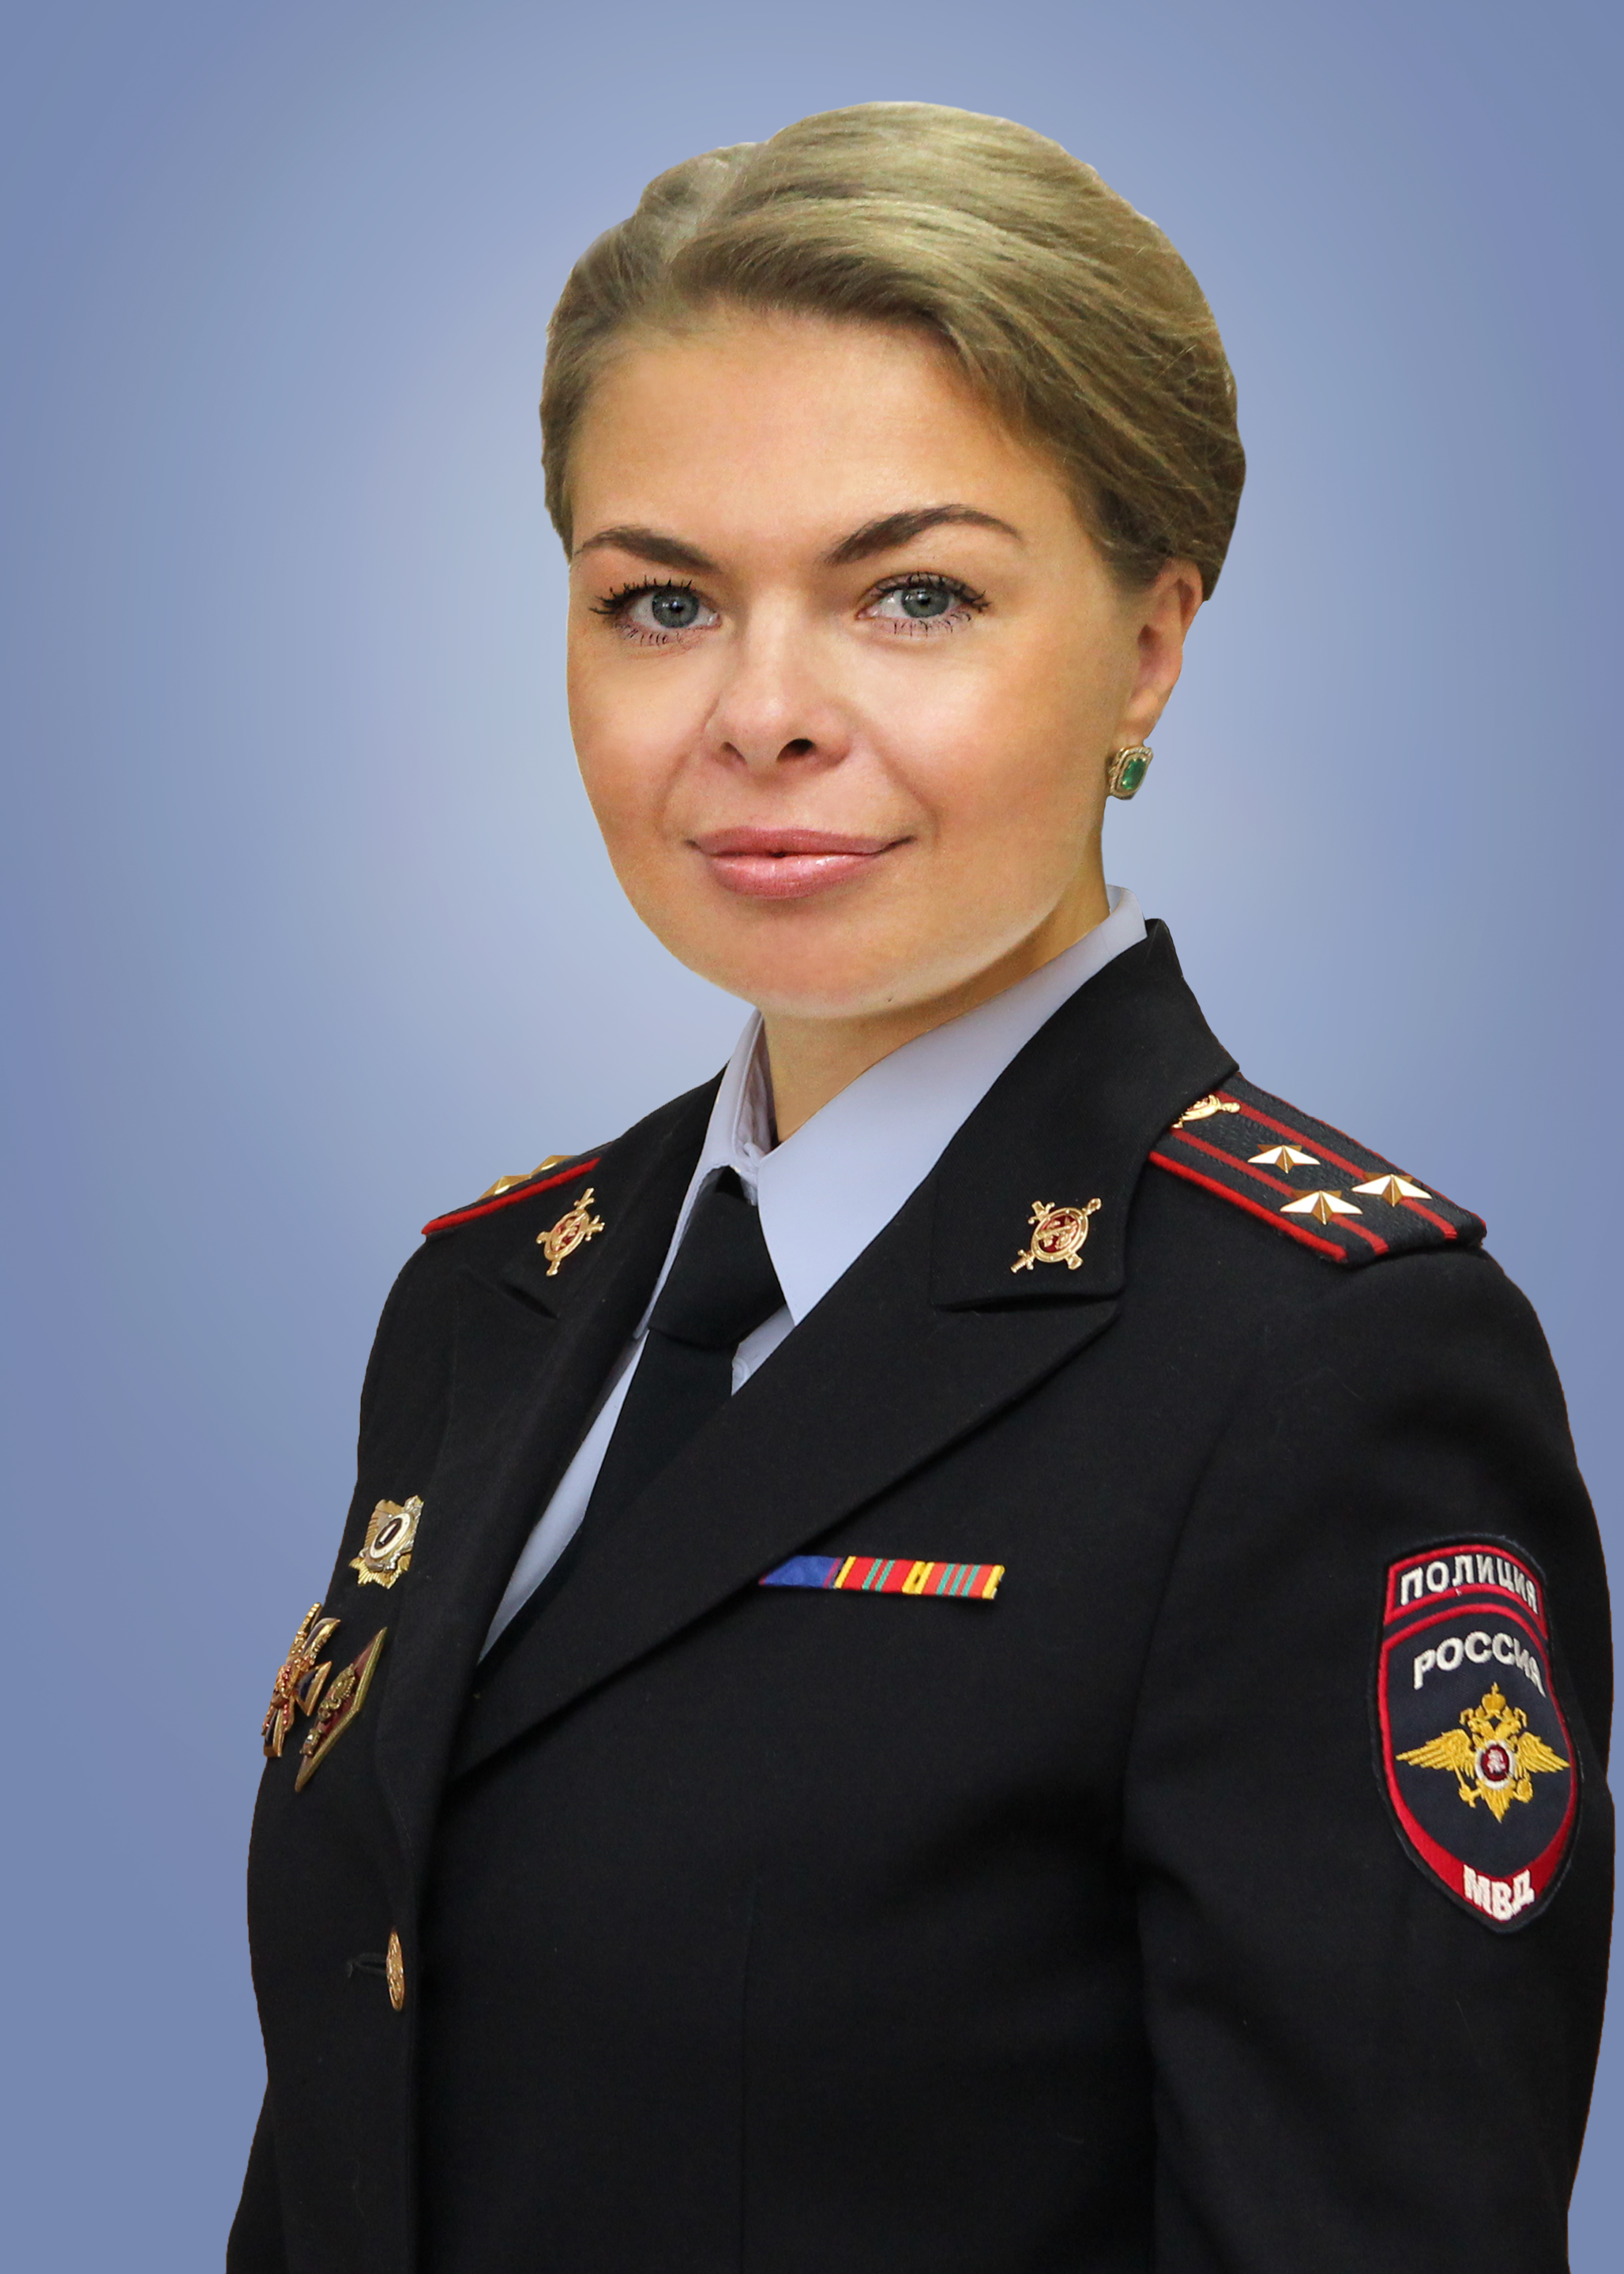             Демидова-Петрова Елизавета Викторовна
    